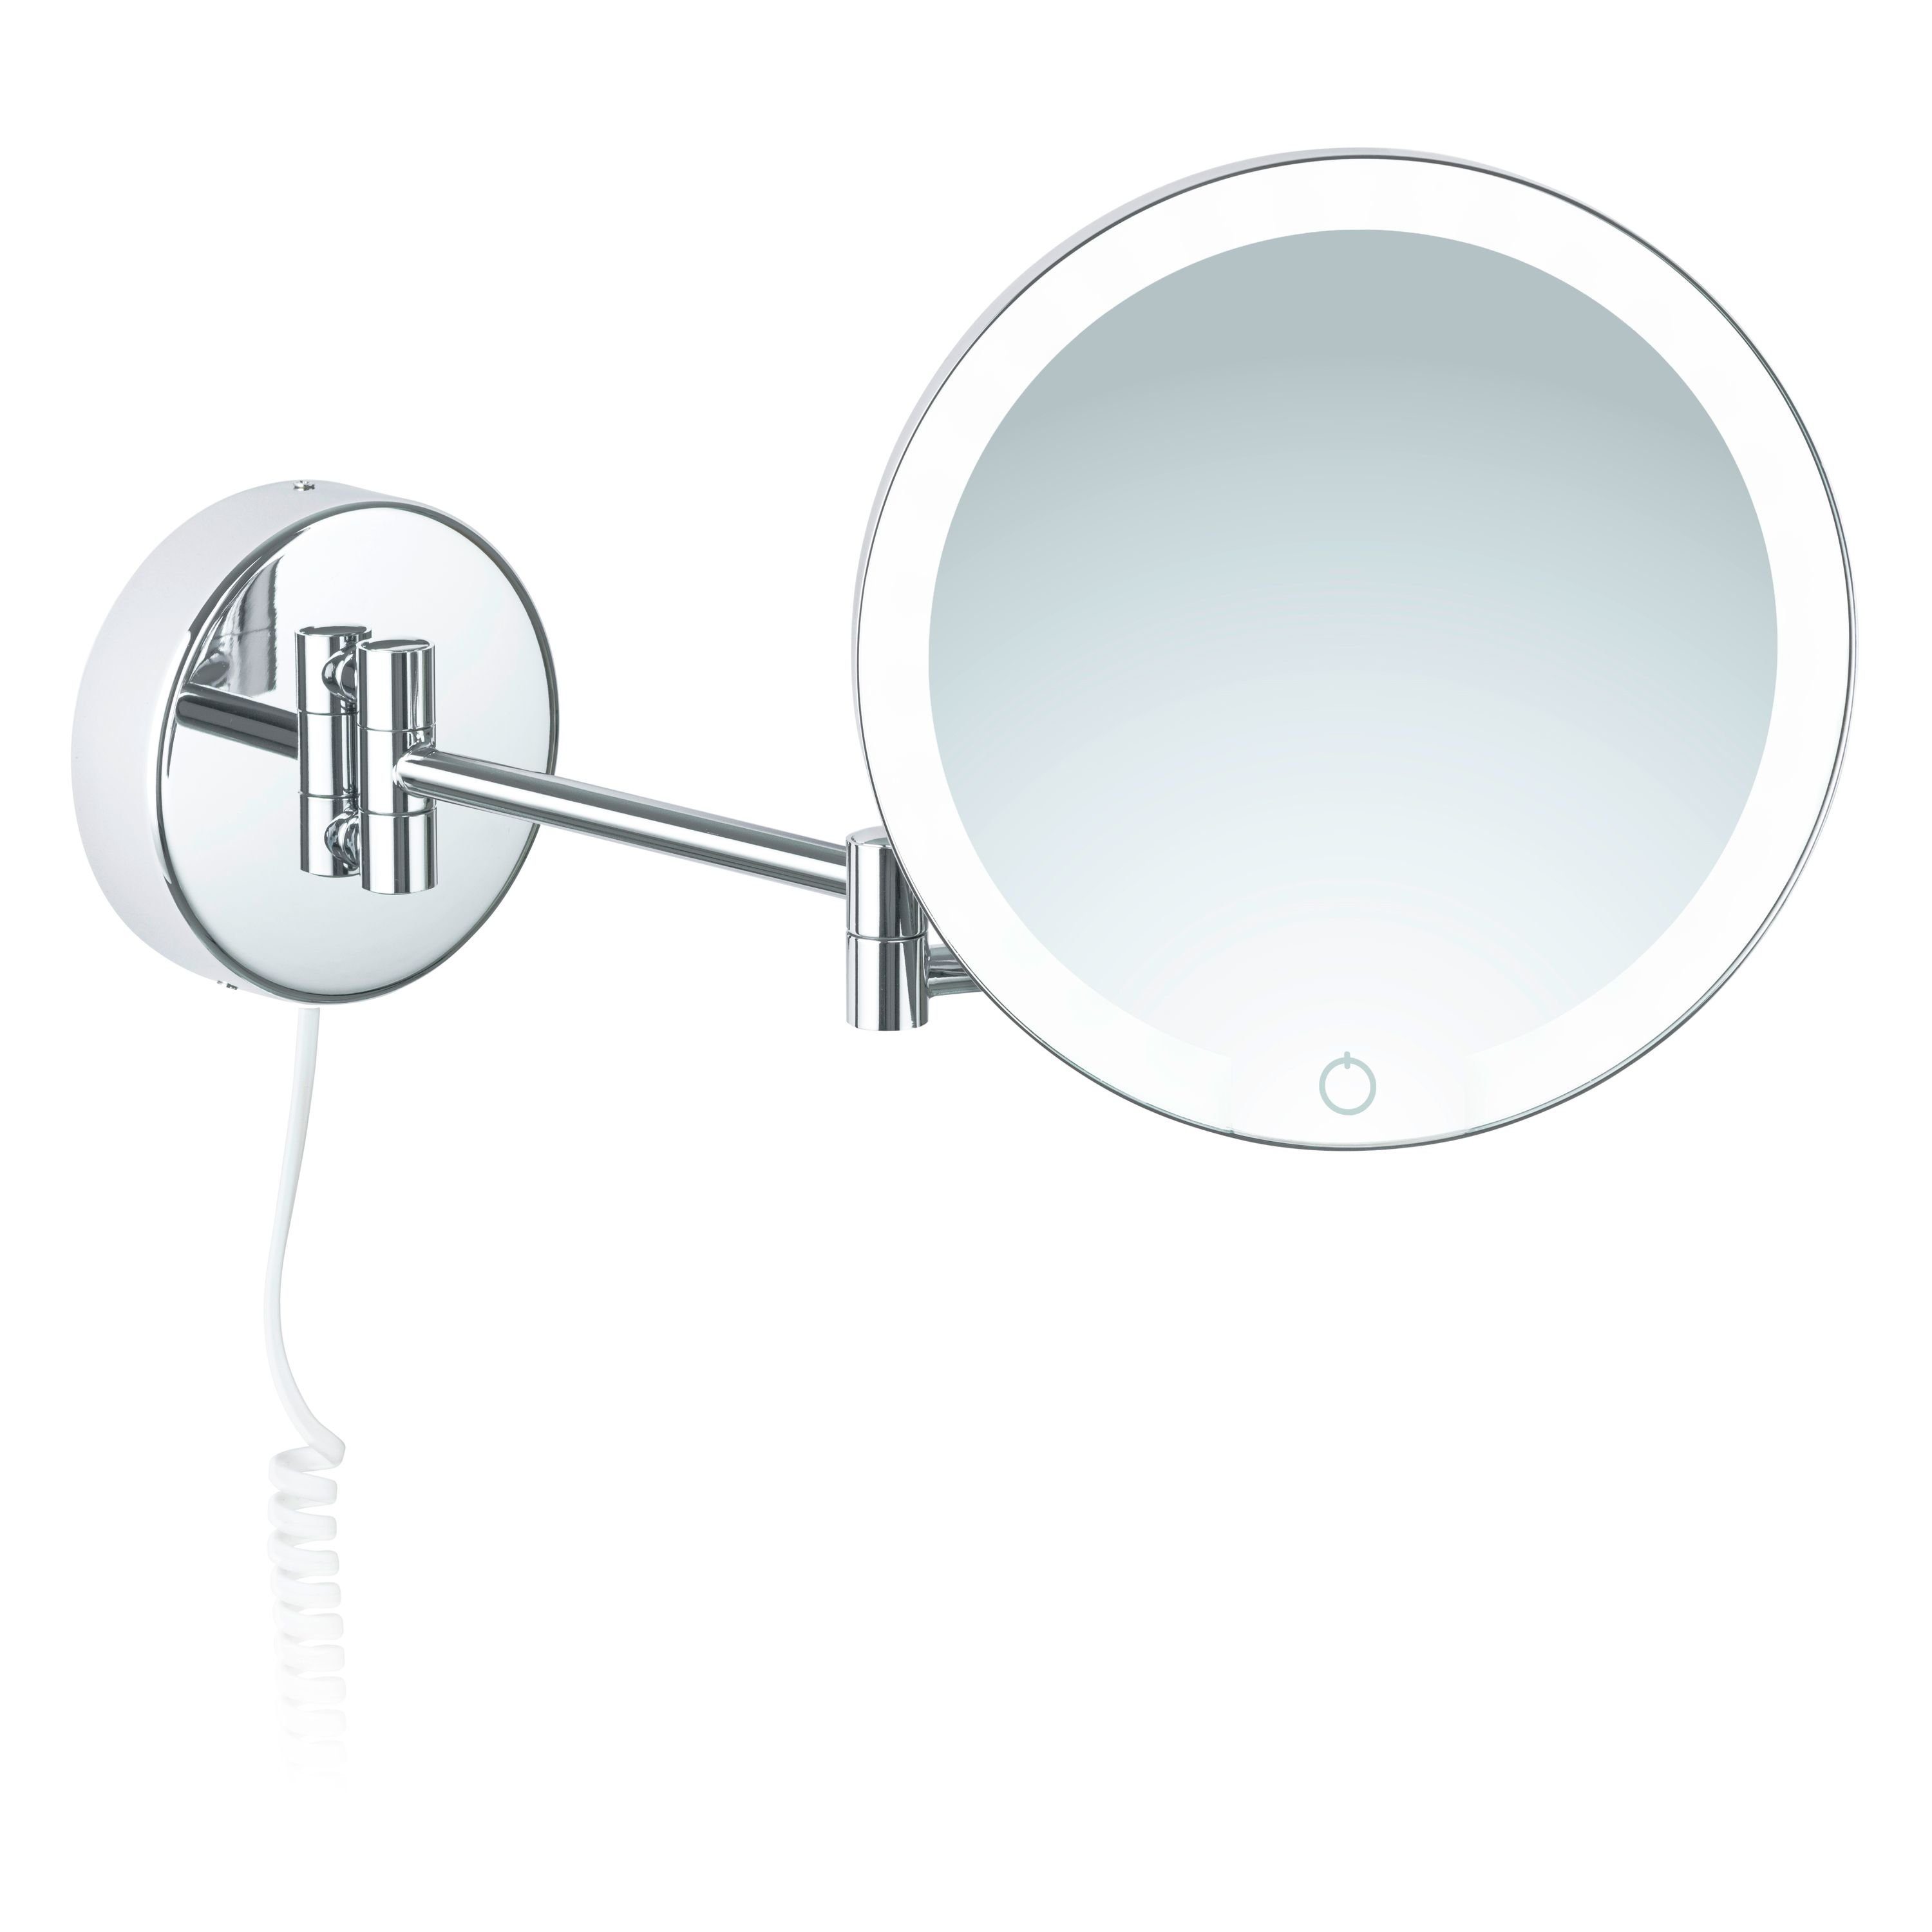 Kosmetikspiegel Kosmetikspiegel weißes Libaro Siena, LED 7x Vergrößerung Dimmer Kabel Auto-off